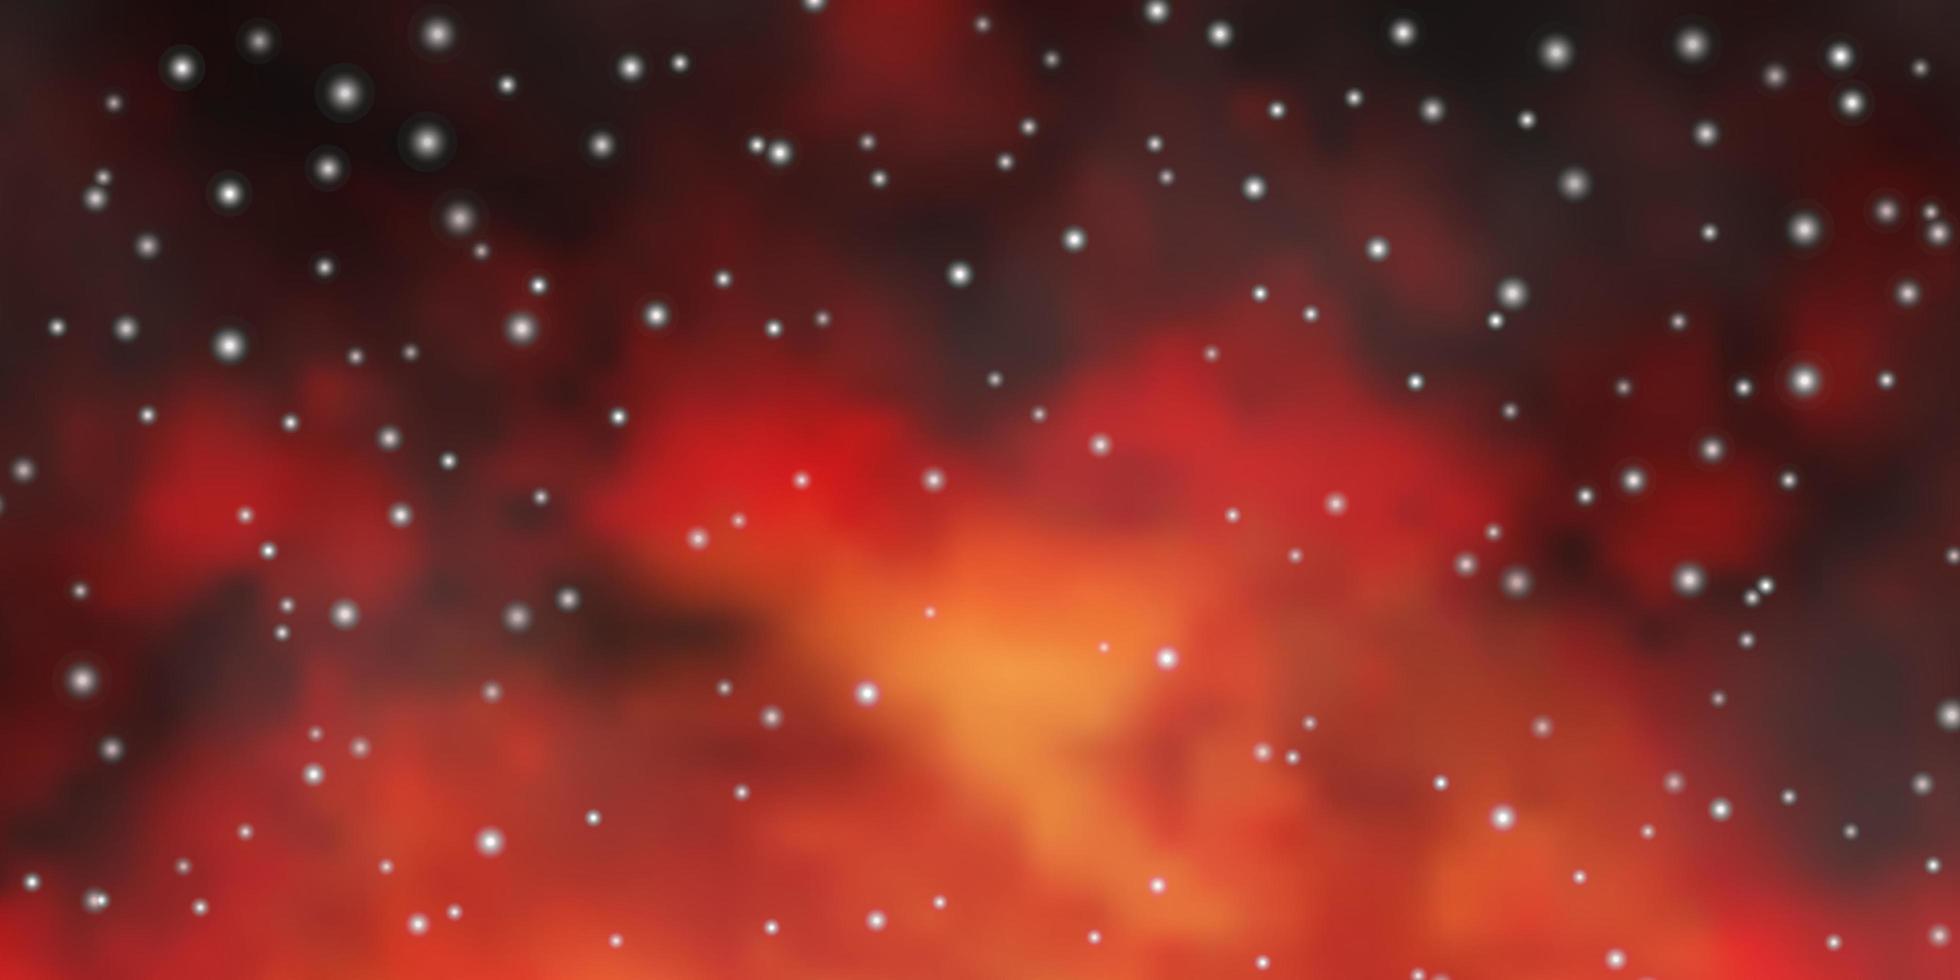 sfondo vettoriale arancione scuro con stelle piccole e grandi. brillante illustrazione colorata con stelle piccole e grandi. modello per siti Web, pagine di destinazione.